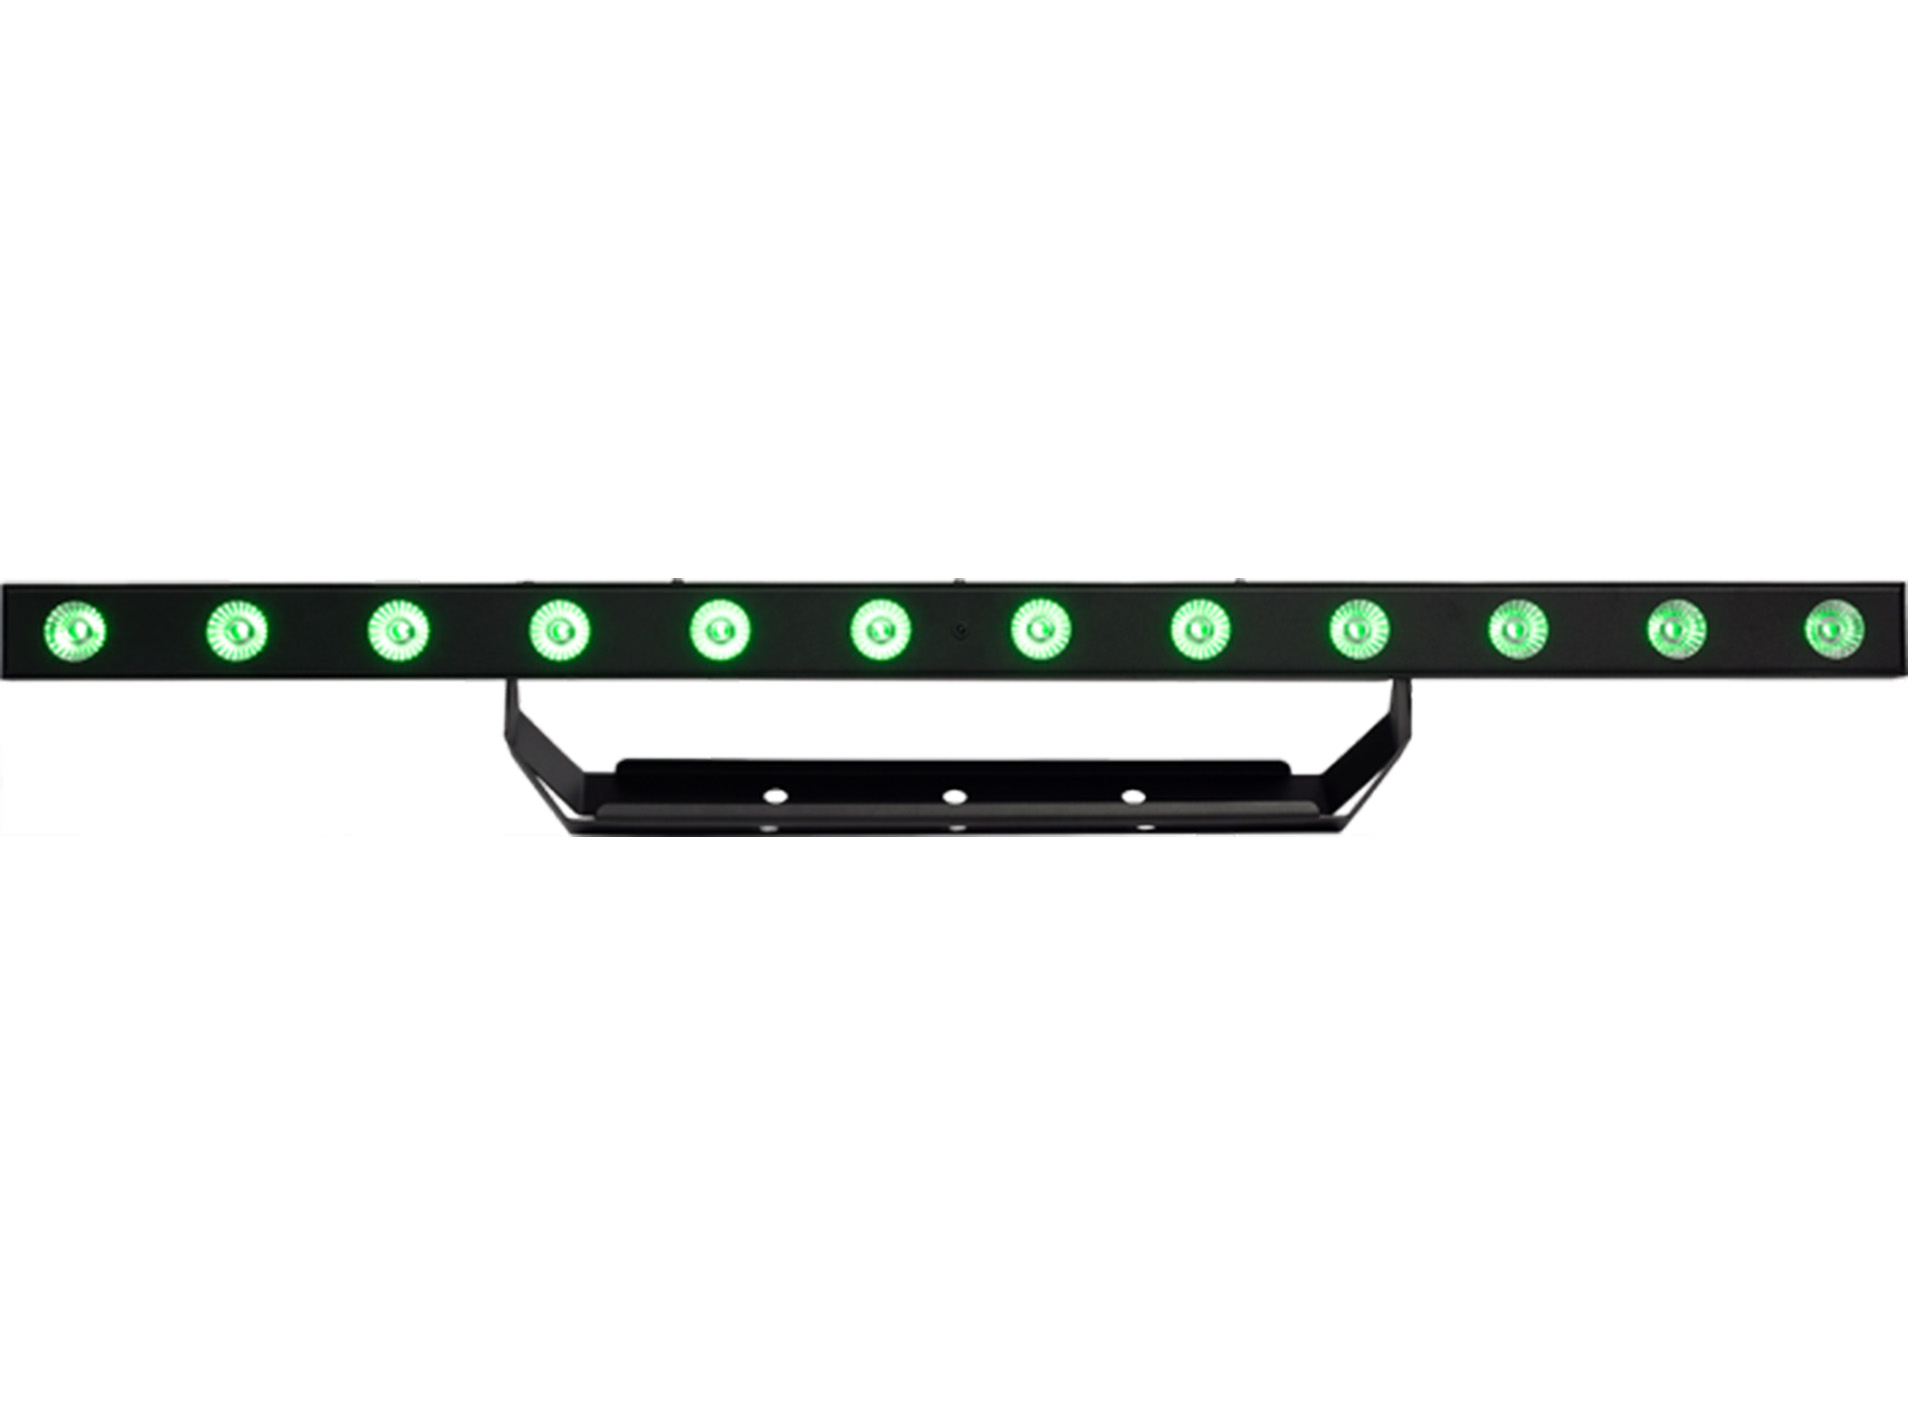 LED bar